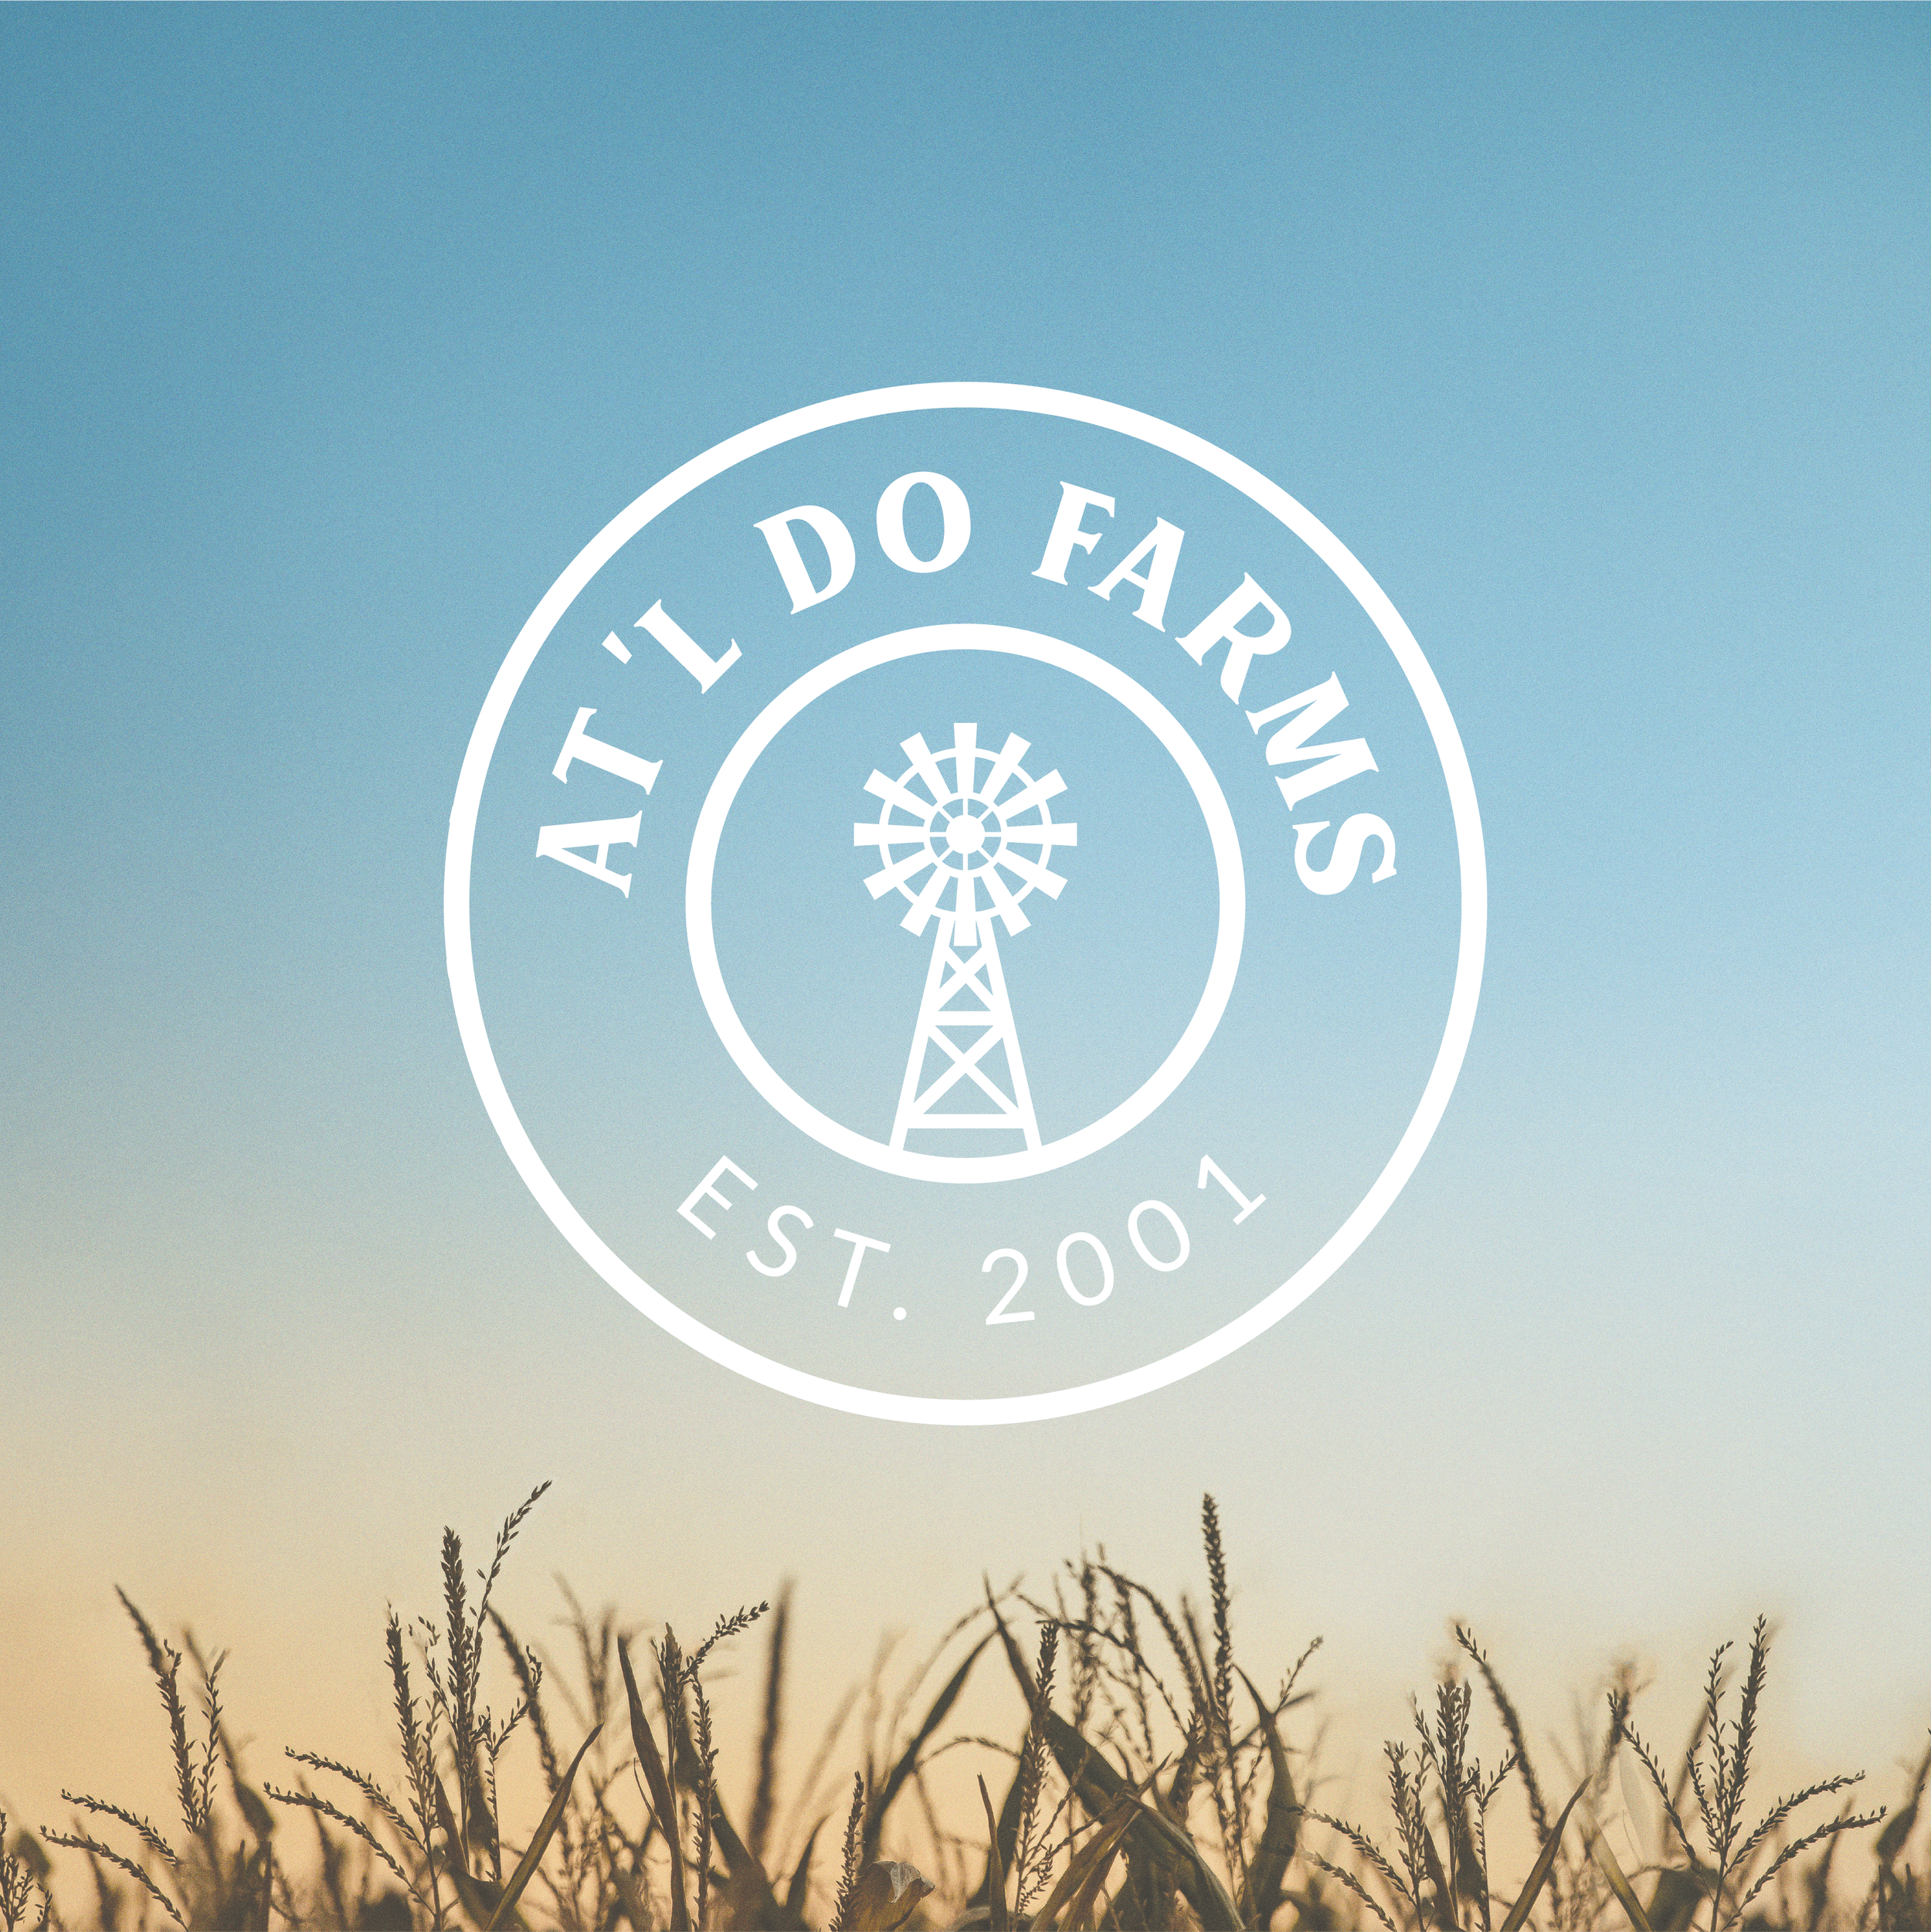 at'l do farms - logo.png